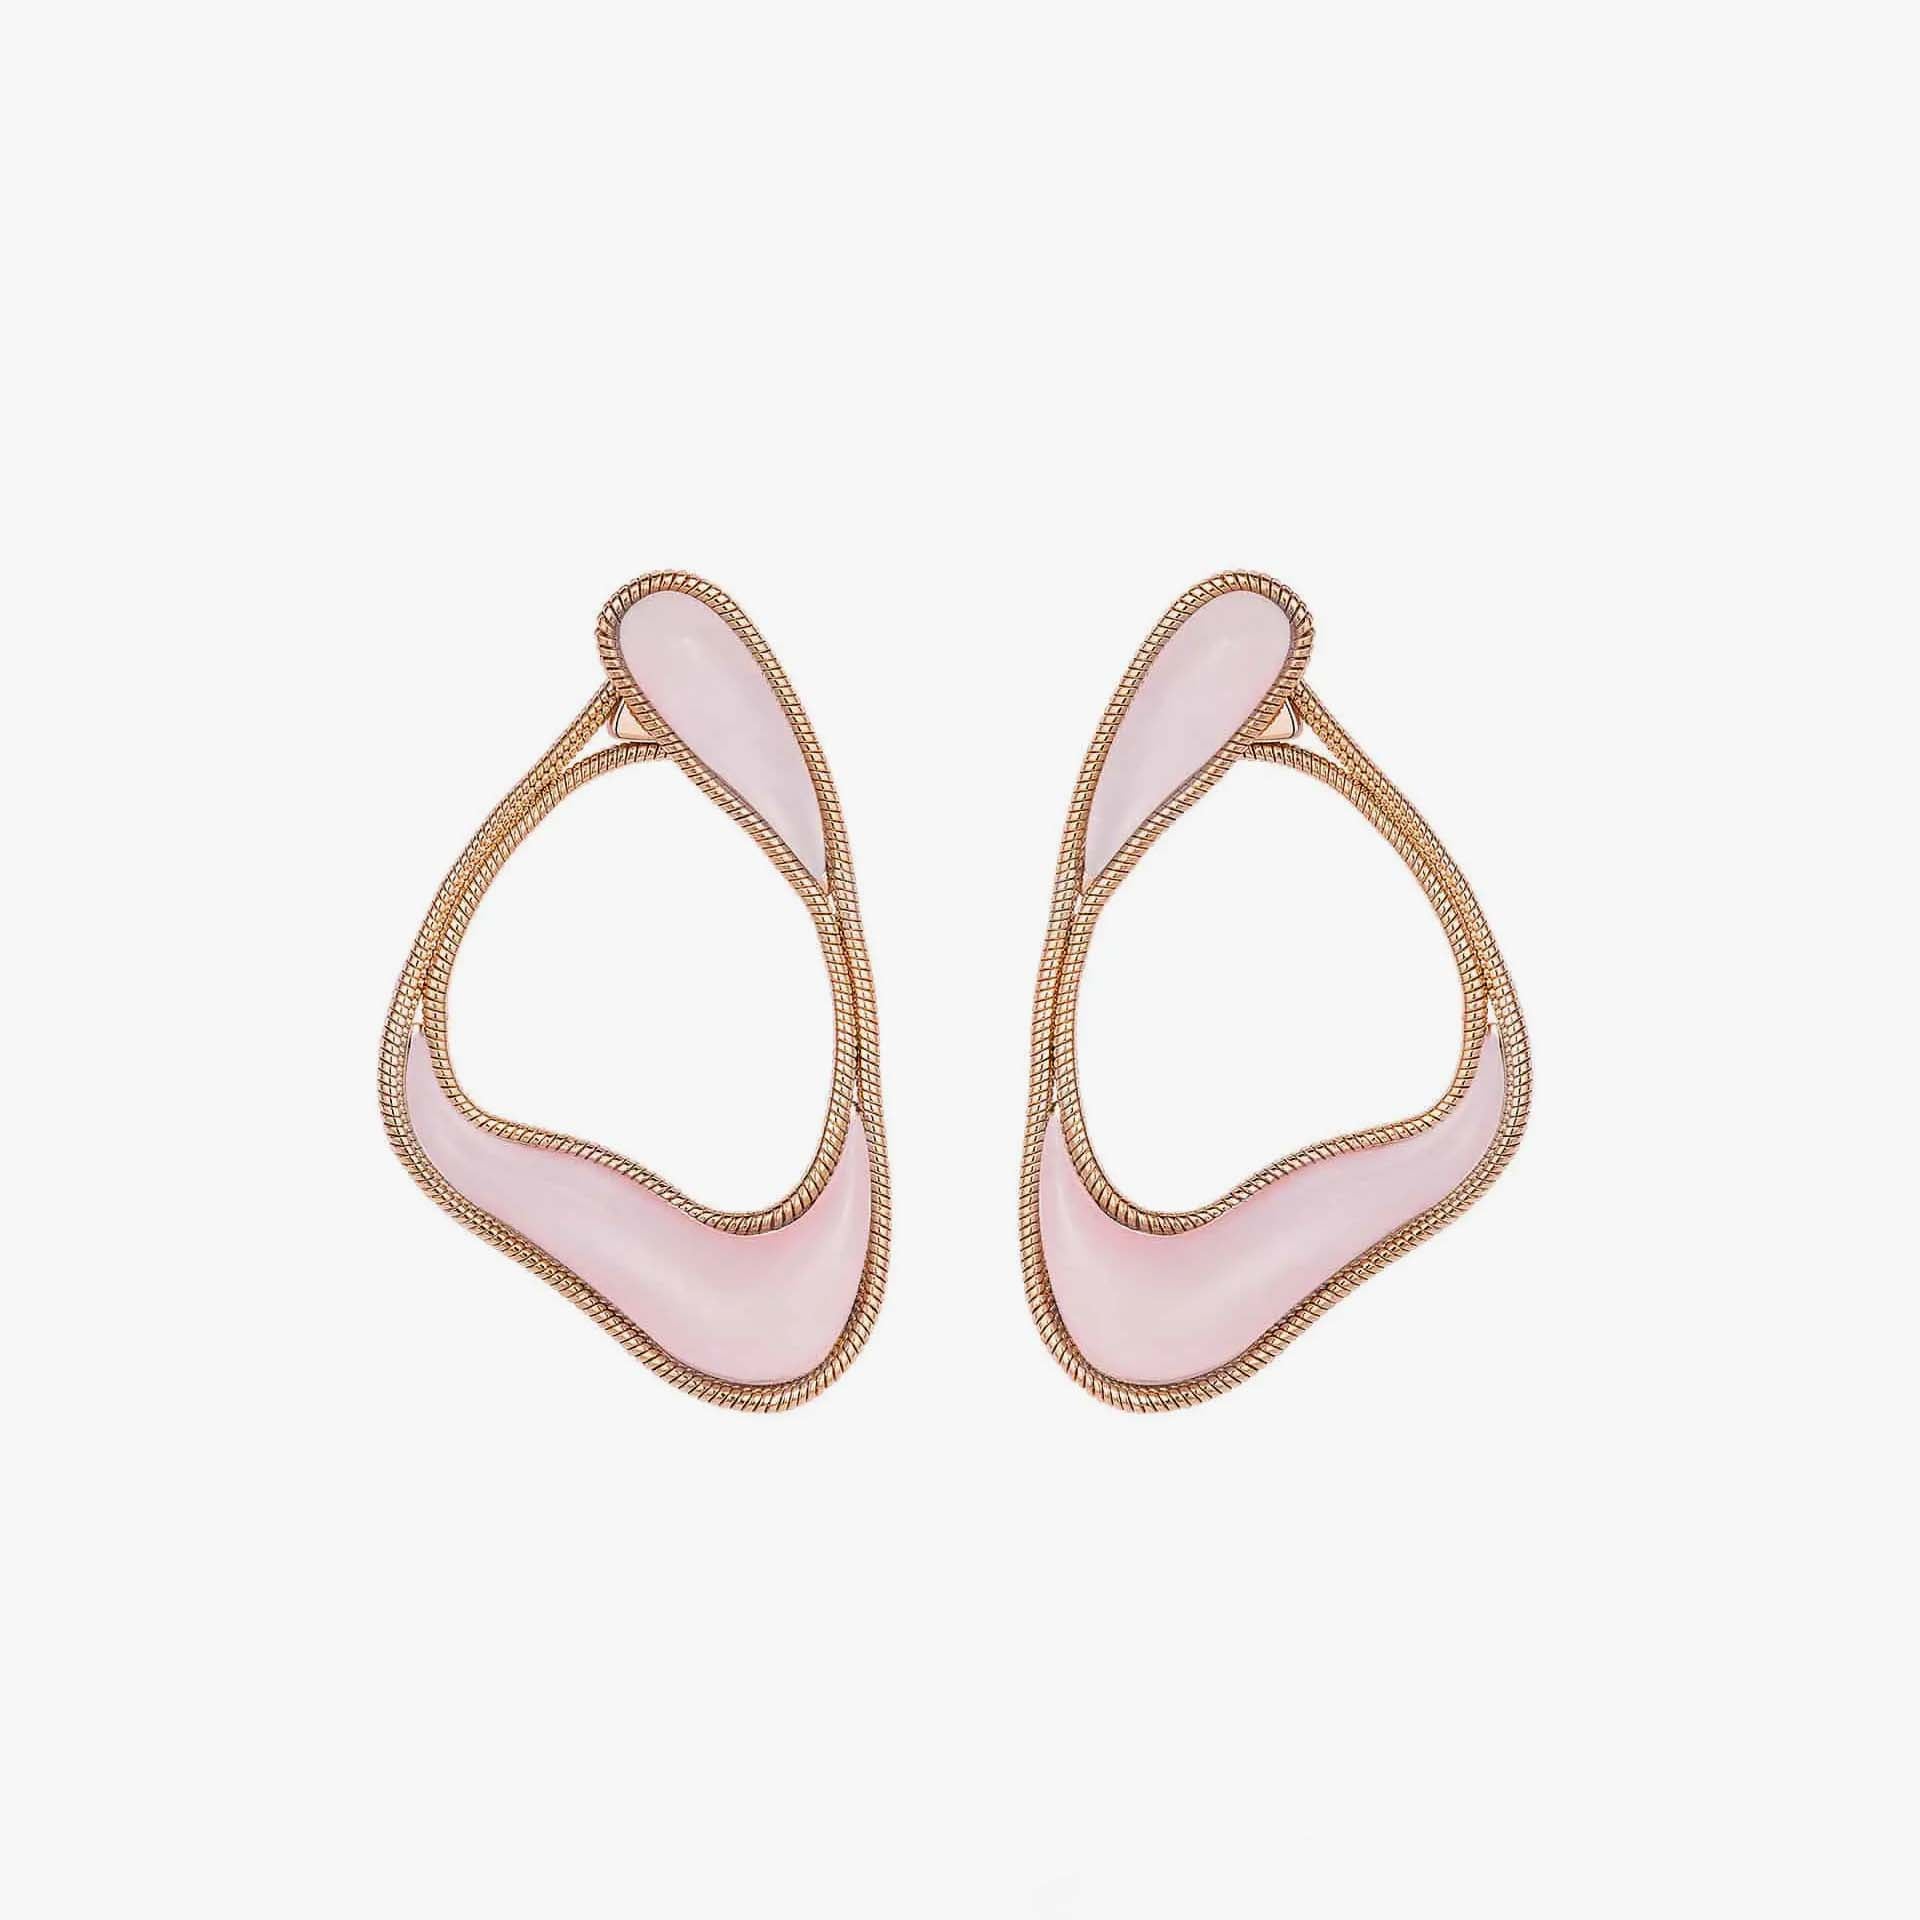 Stream Line Hoop Earrings in Pink Opal